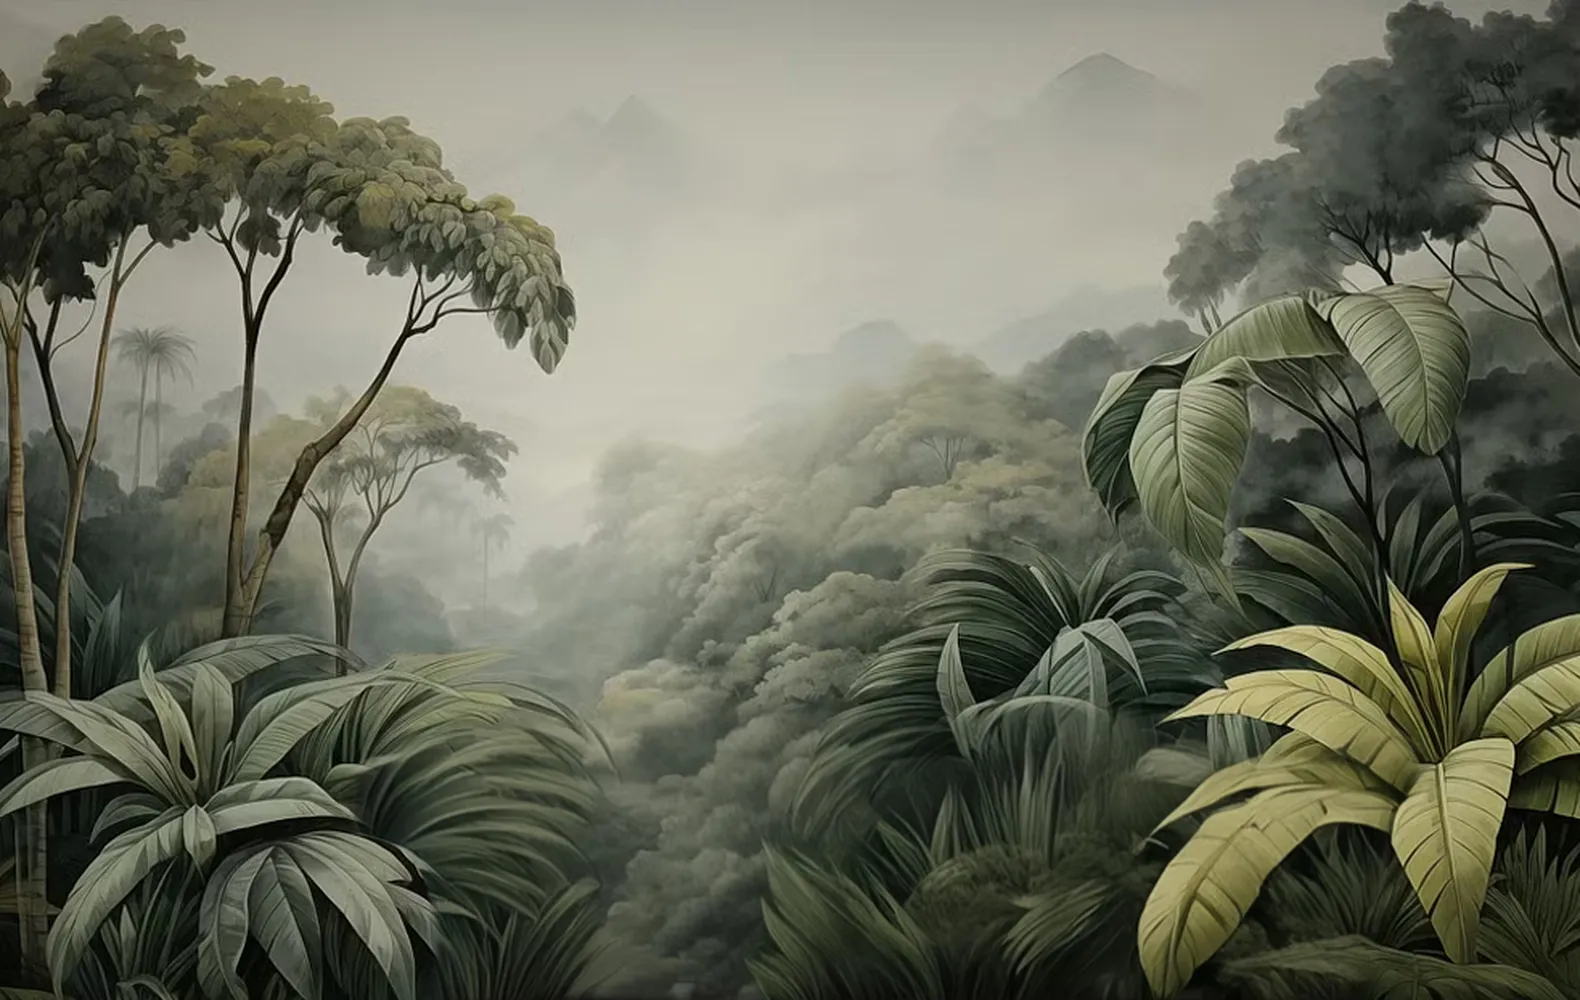 پوستر منظره طرح چشم انداز بسیار زیبای جنگل های استوایی